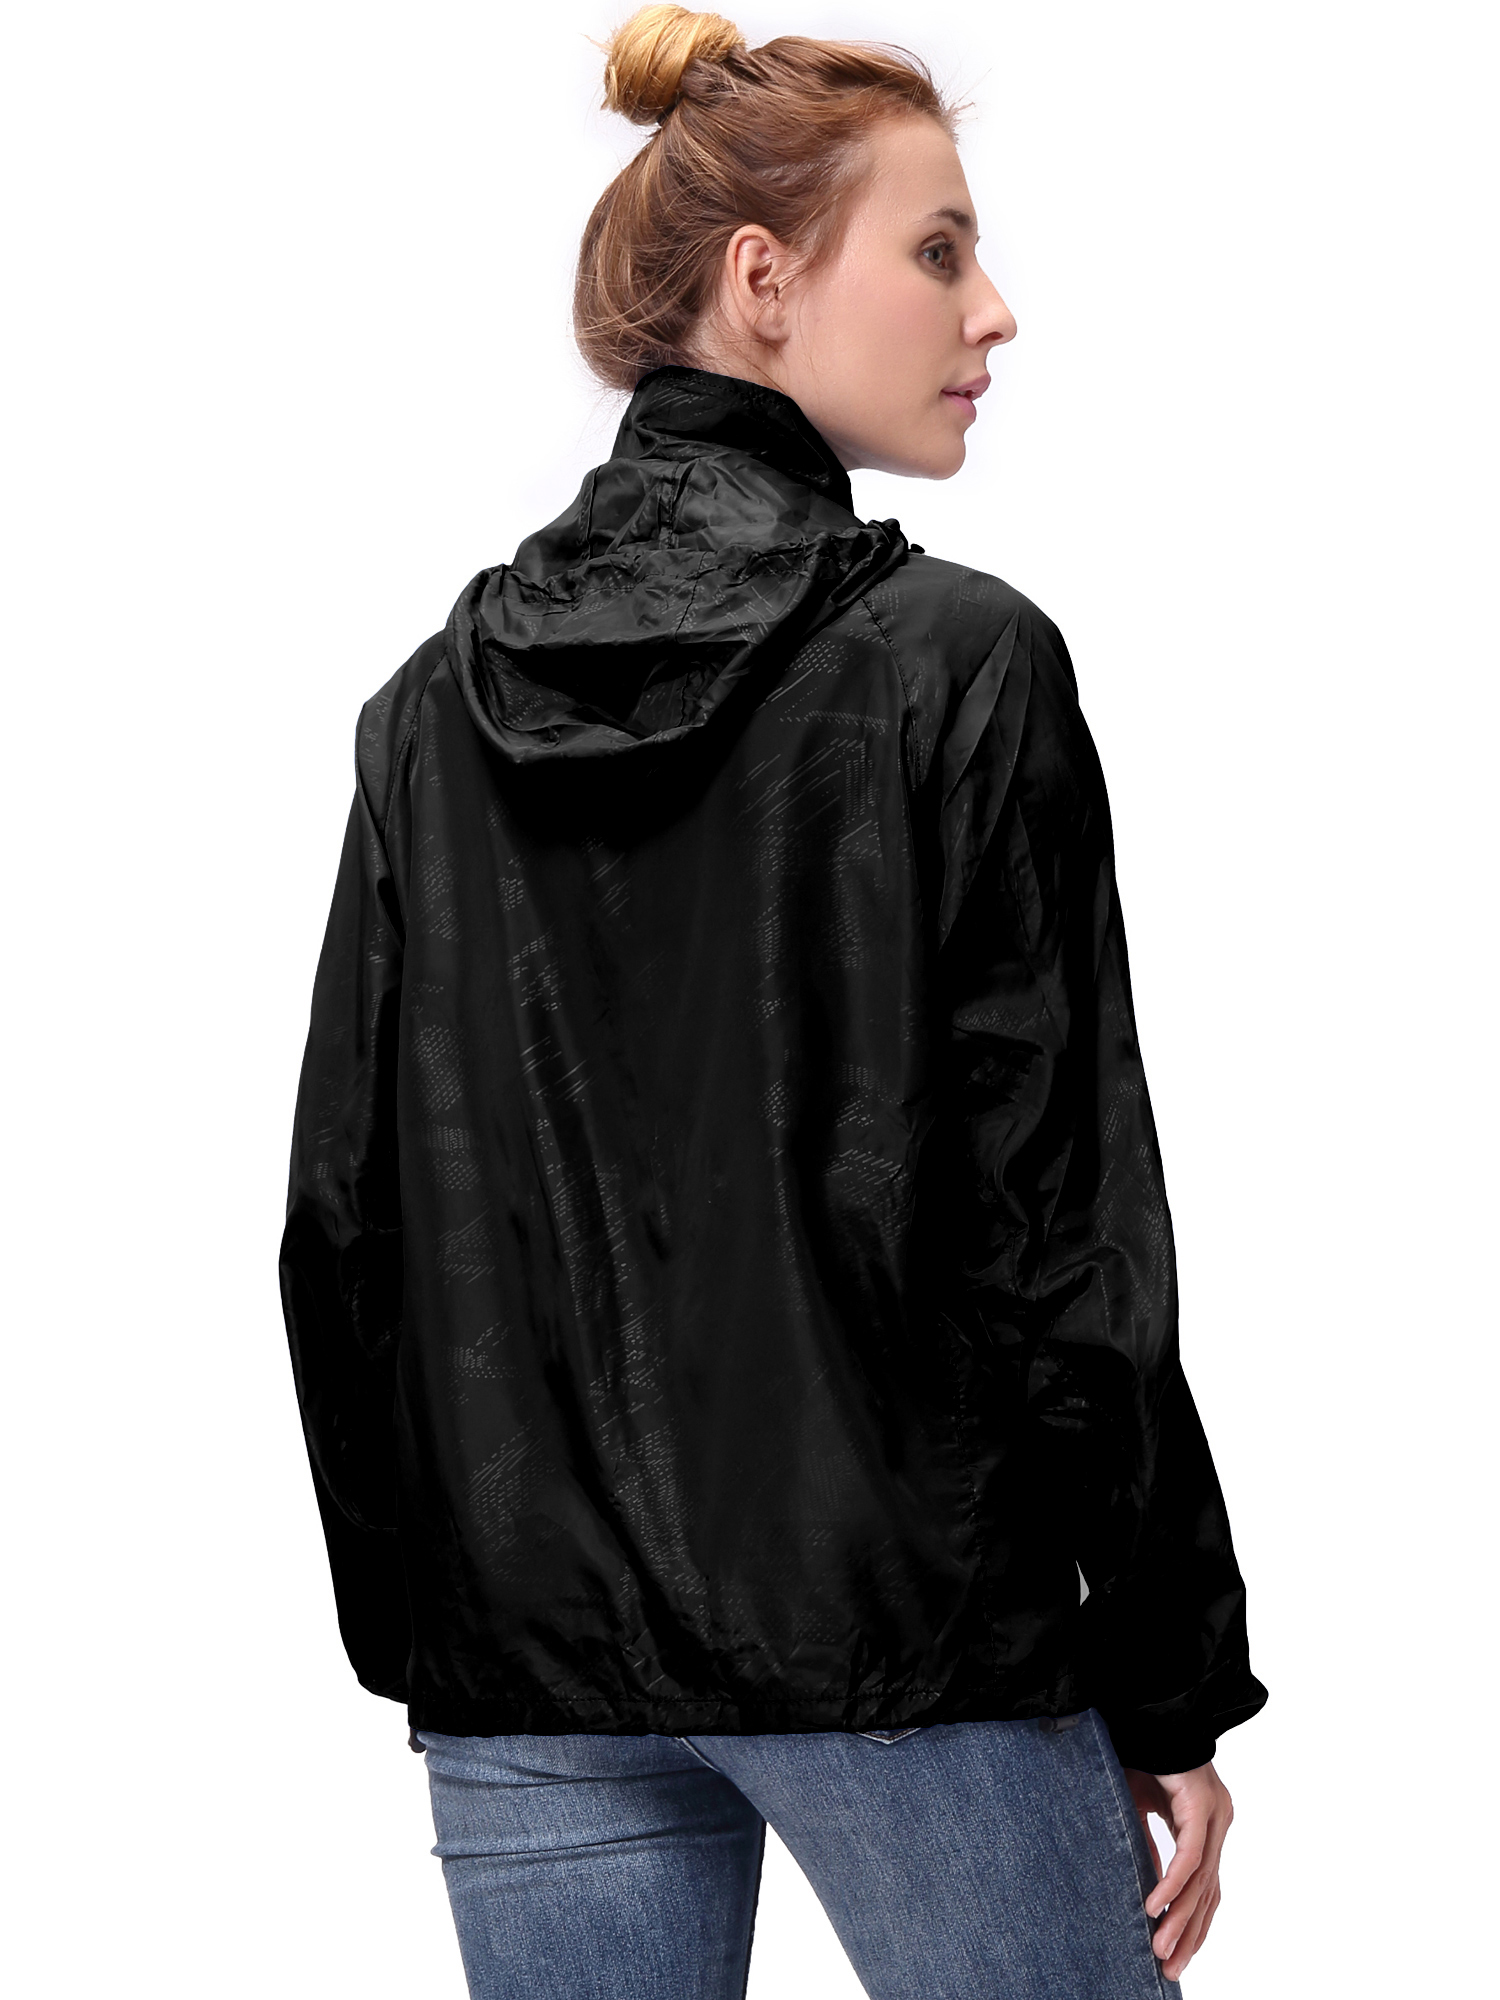 Fashion Womens/Mens Outdoor Lightweight windbreaker Jackets Waterproof Rain Coat Outwear Zip-Up Long Sleeve Hoodie Sport Windbreaker - image 4 of 9